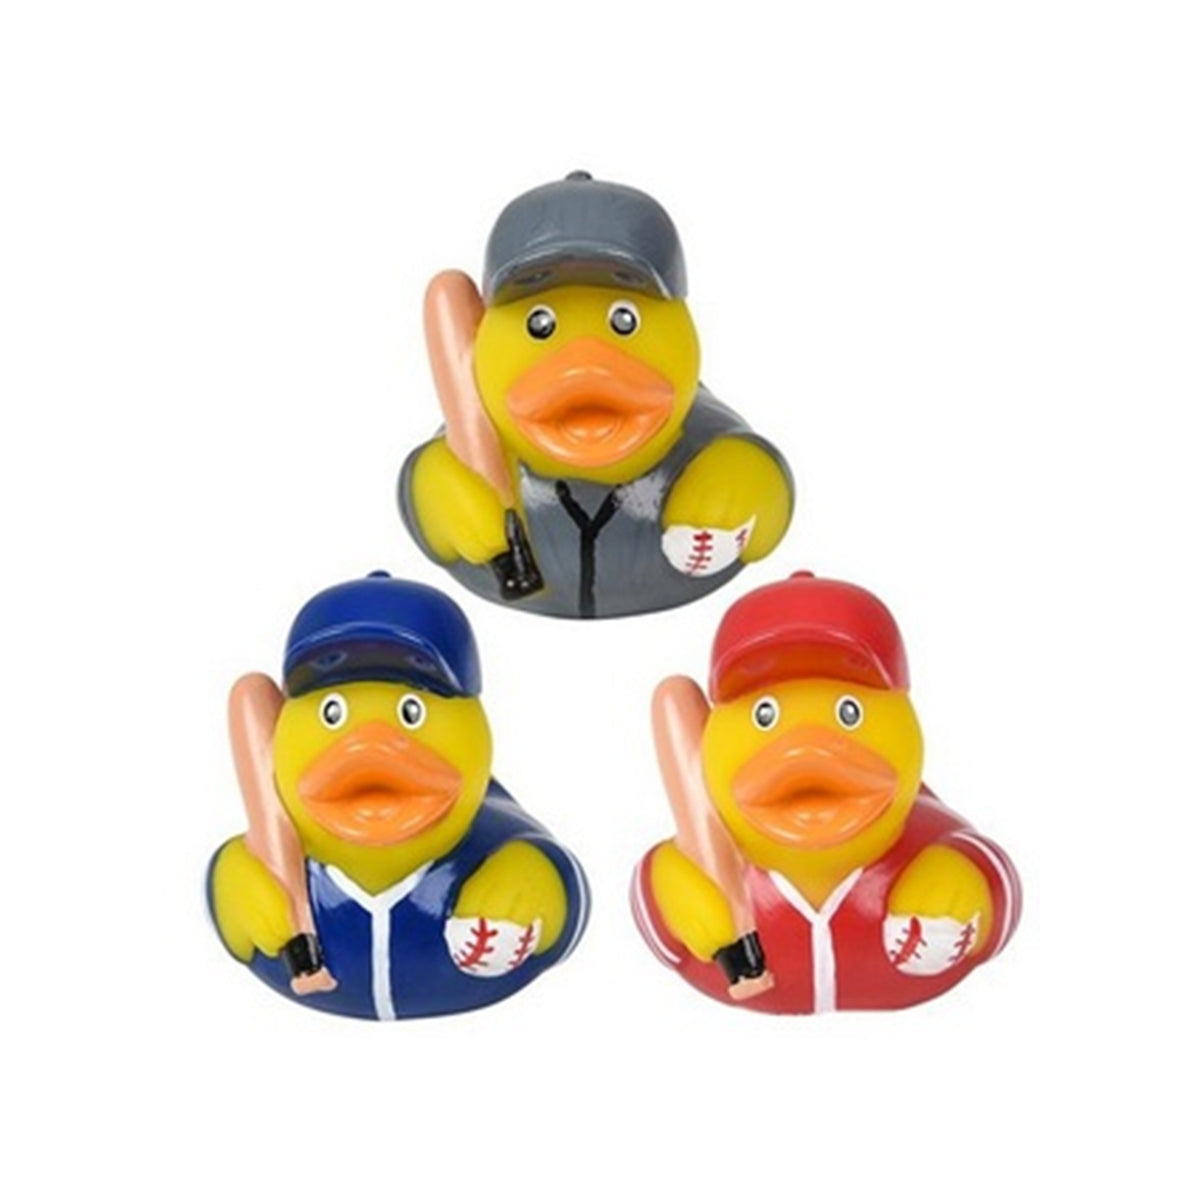 Baseball Rubber Ducky kids toys In Bulk